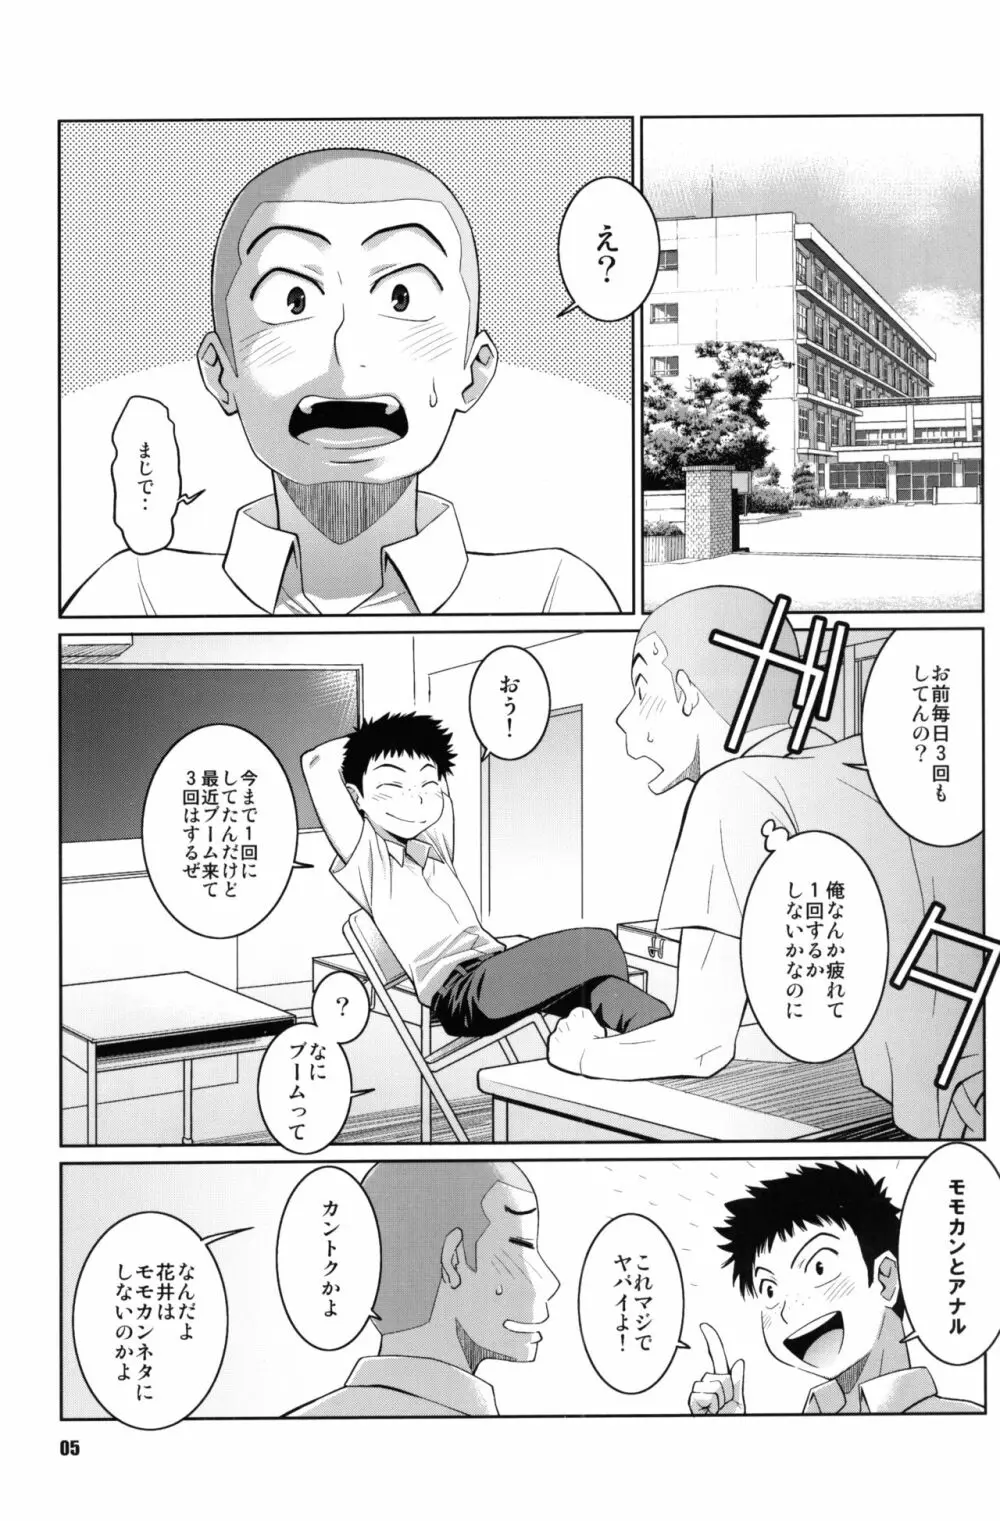 花井と田島の昨晩のオカズ話 - page4